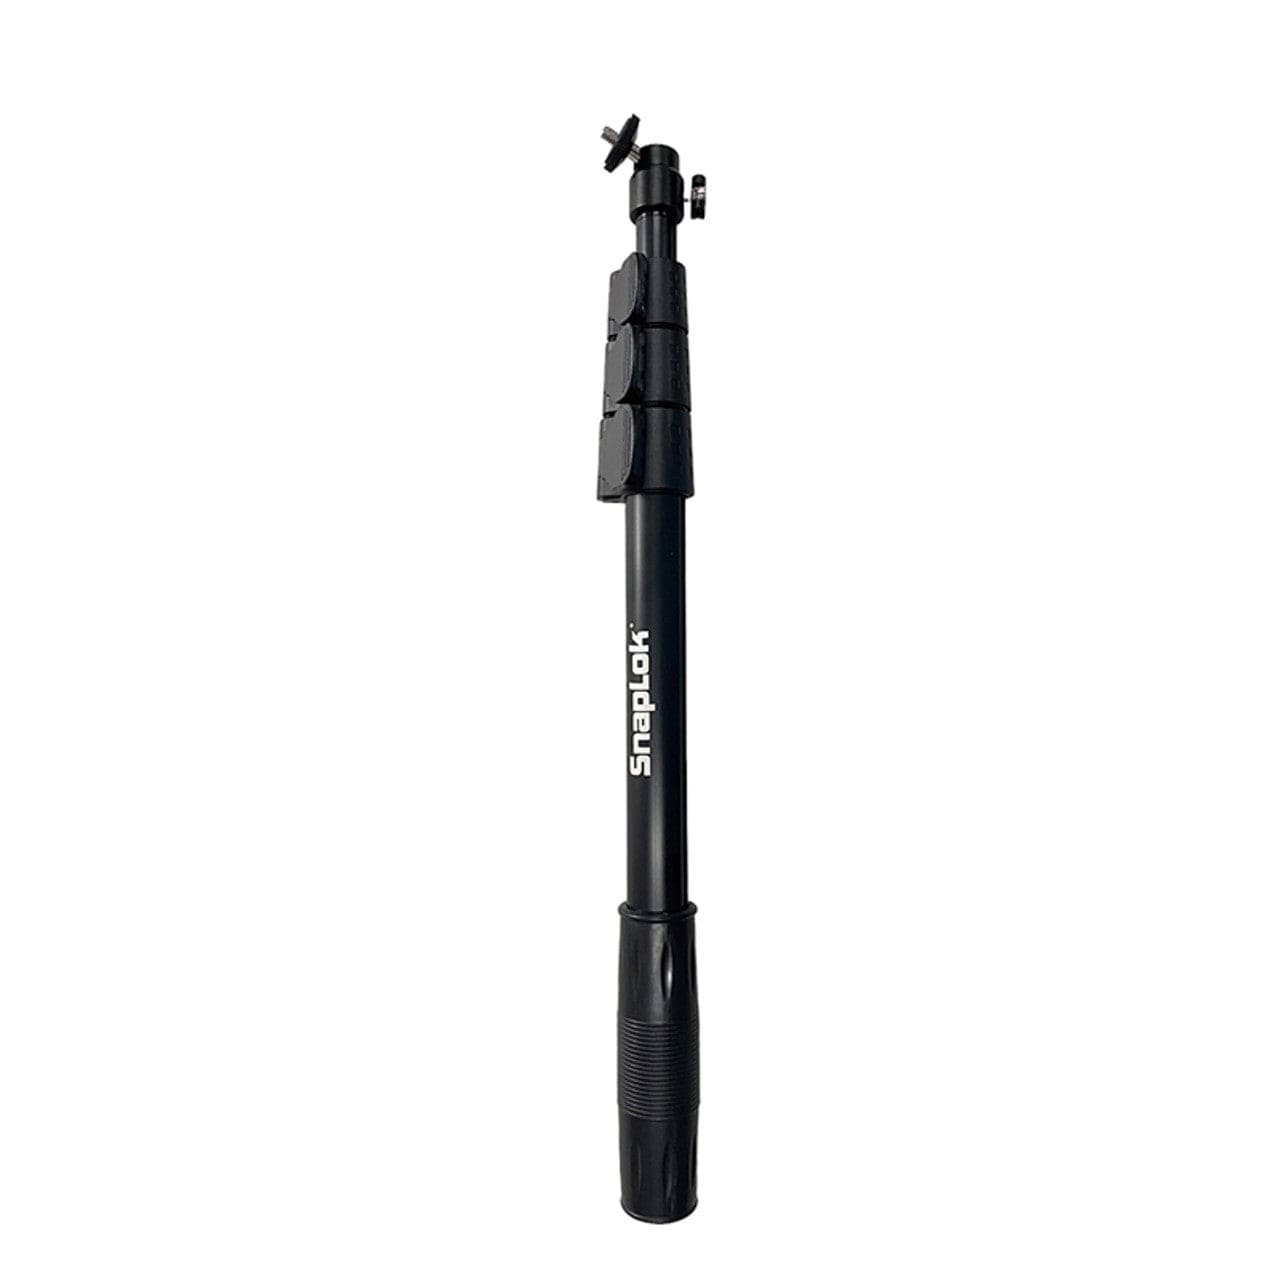 SnapLok 48" Extendable Camera Pole - ECP-48 - Chimney Cricket